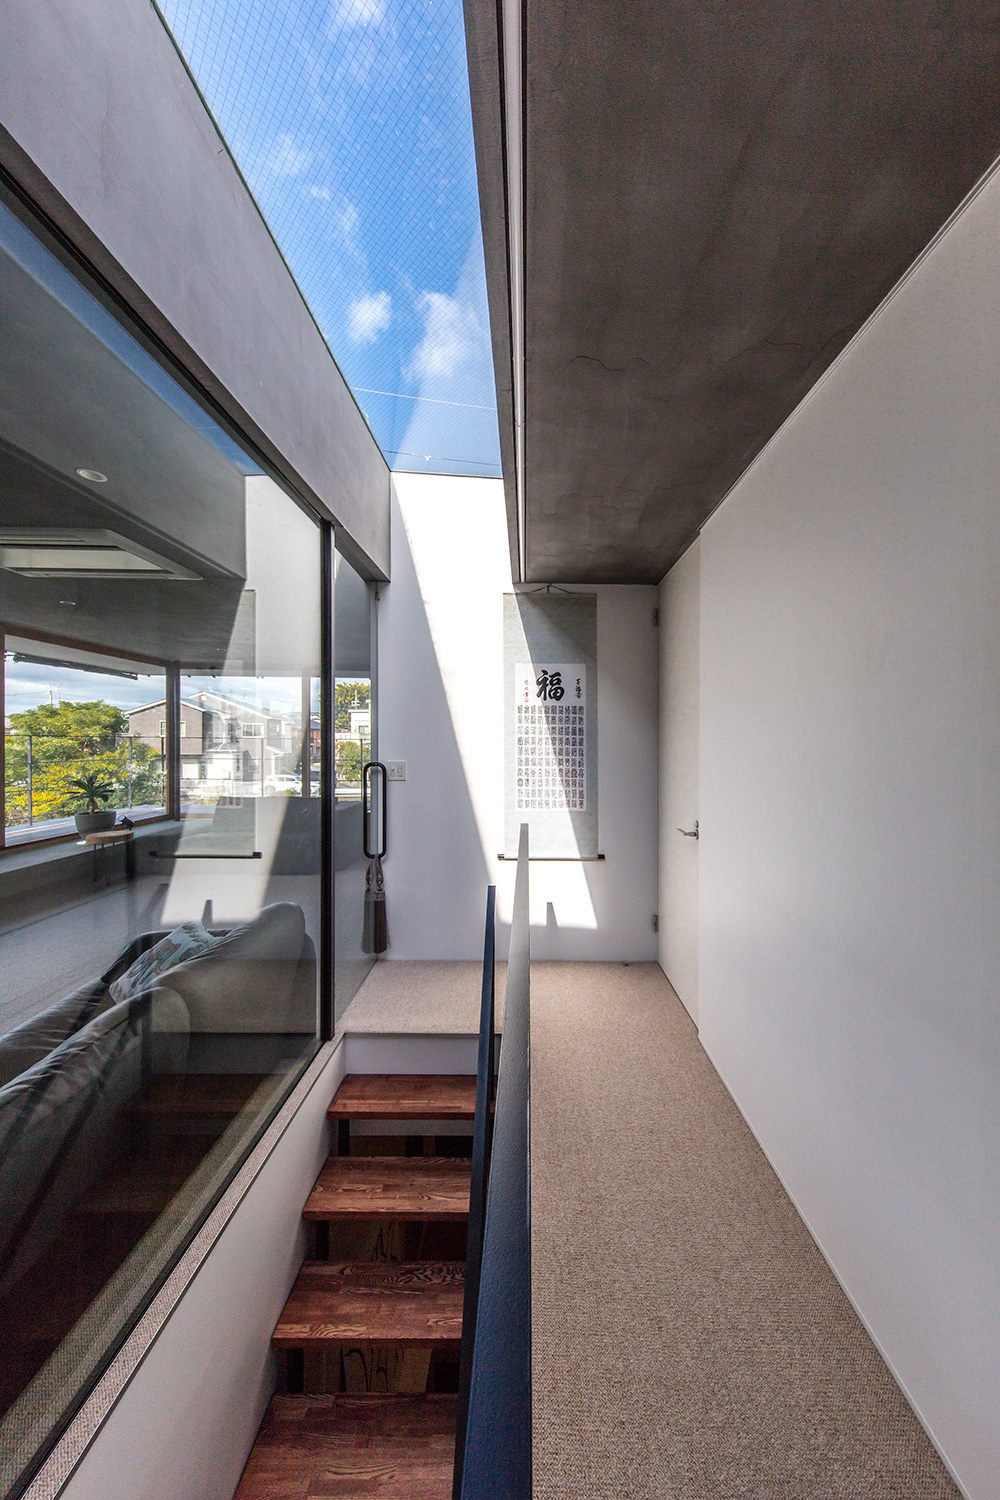 大阪の設計事務所による注文住宅 階段室に設けられたトップライトはライトウェルの役割を果たす